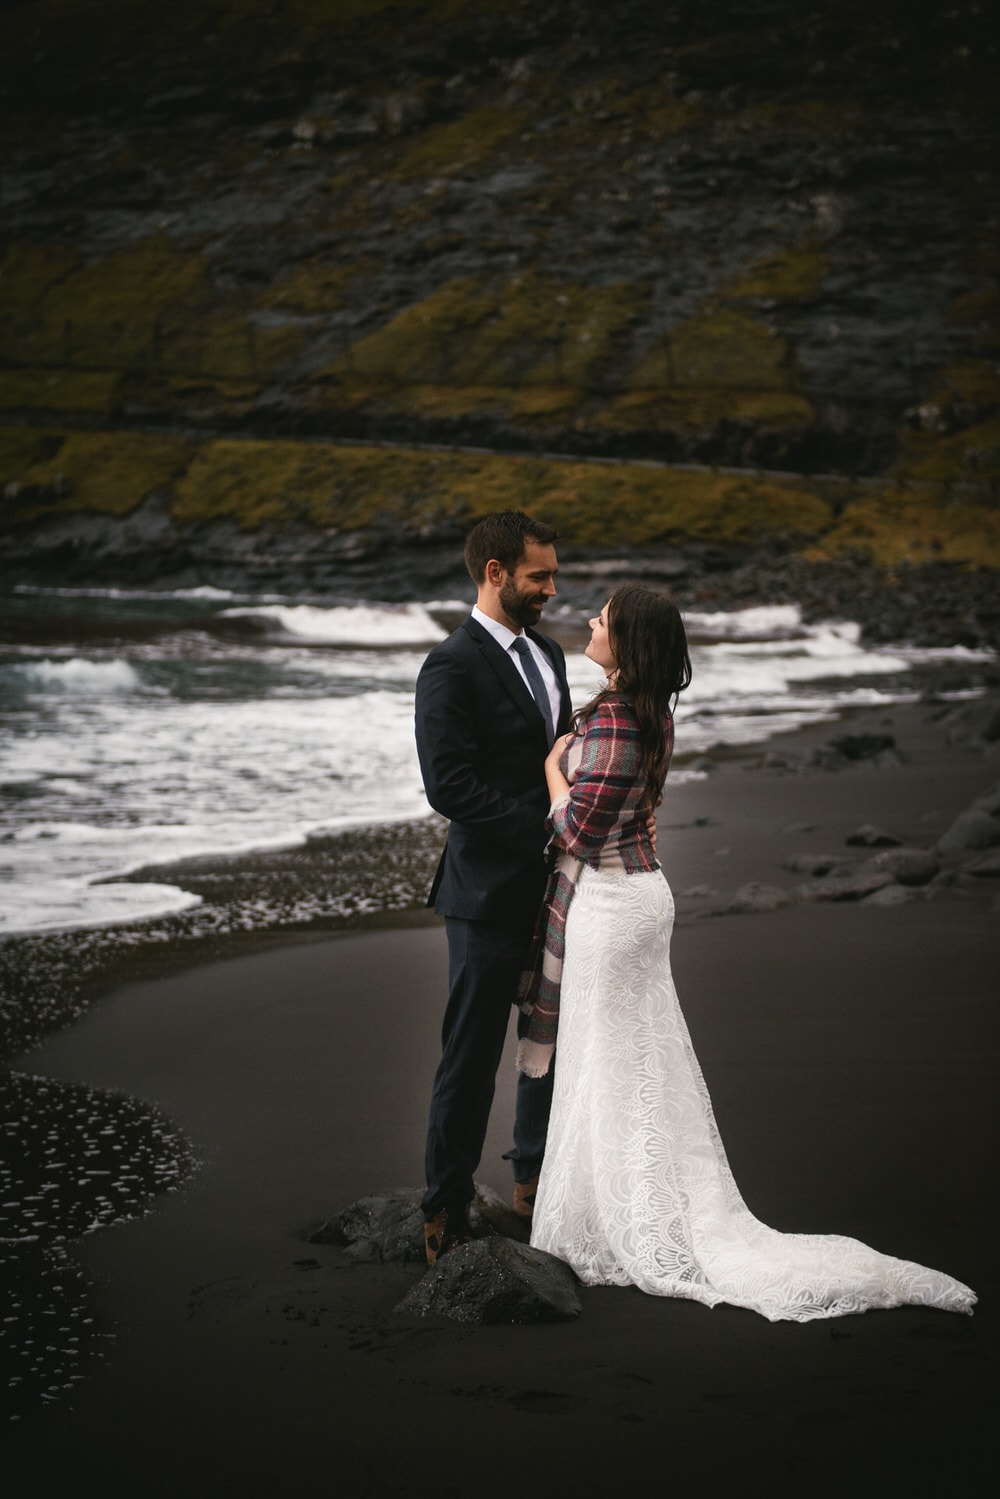 When to elope in the Faroe Islands